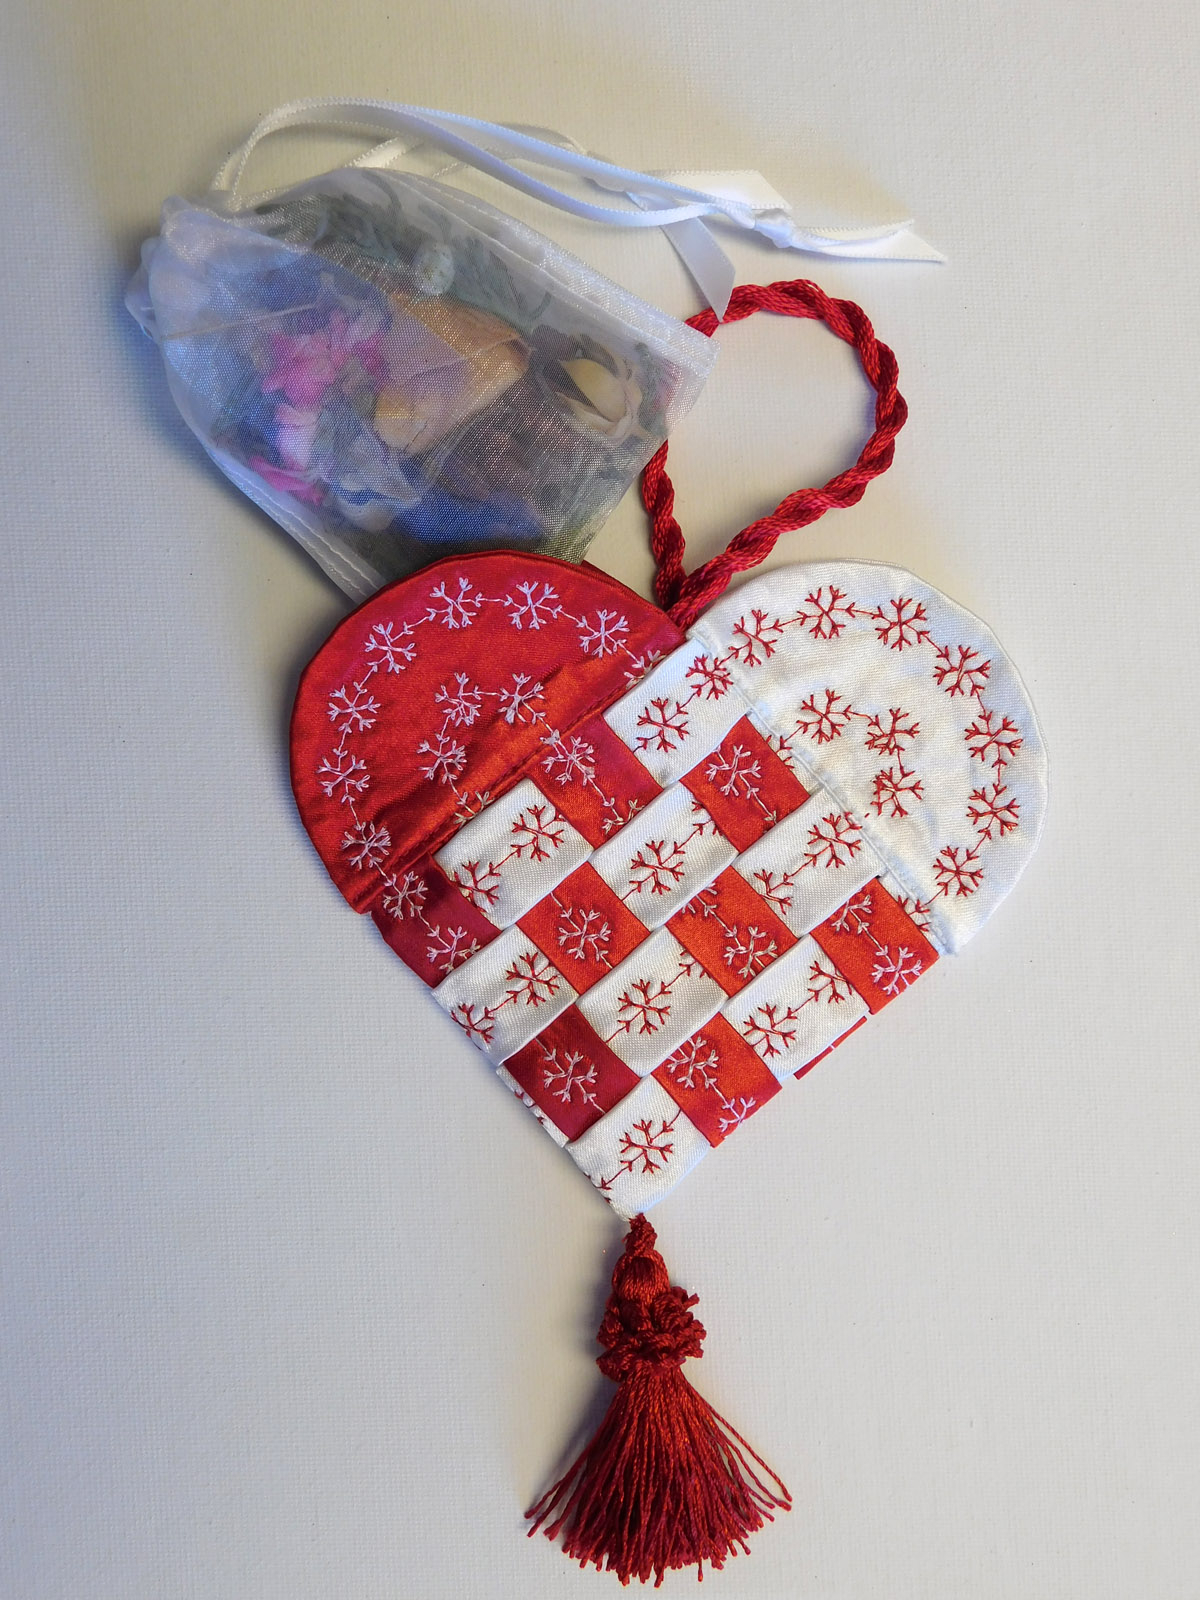 Scandinavian Embroidery Patterns Free How To Make A Fabric Scandinavian Heart Weallsew